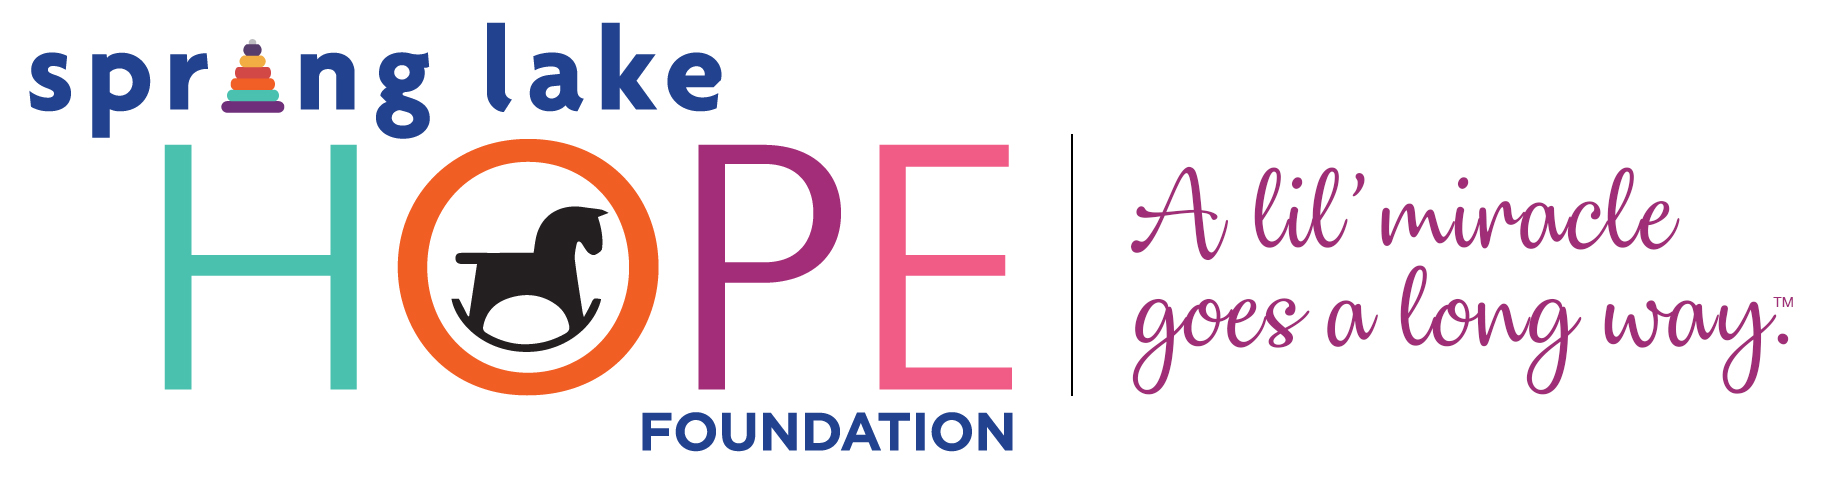 Spring Lake Hope Foundation